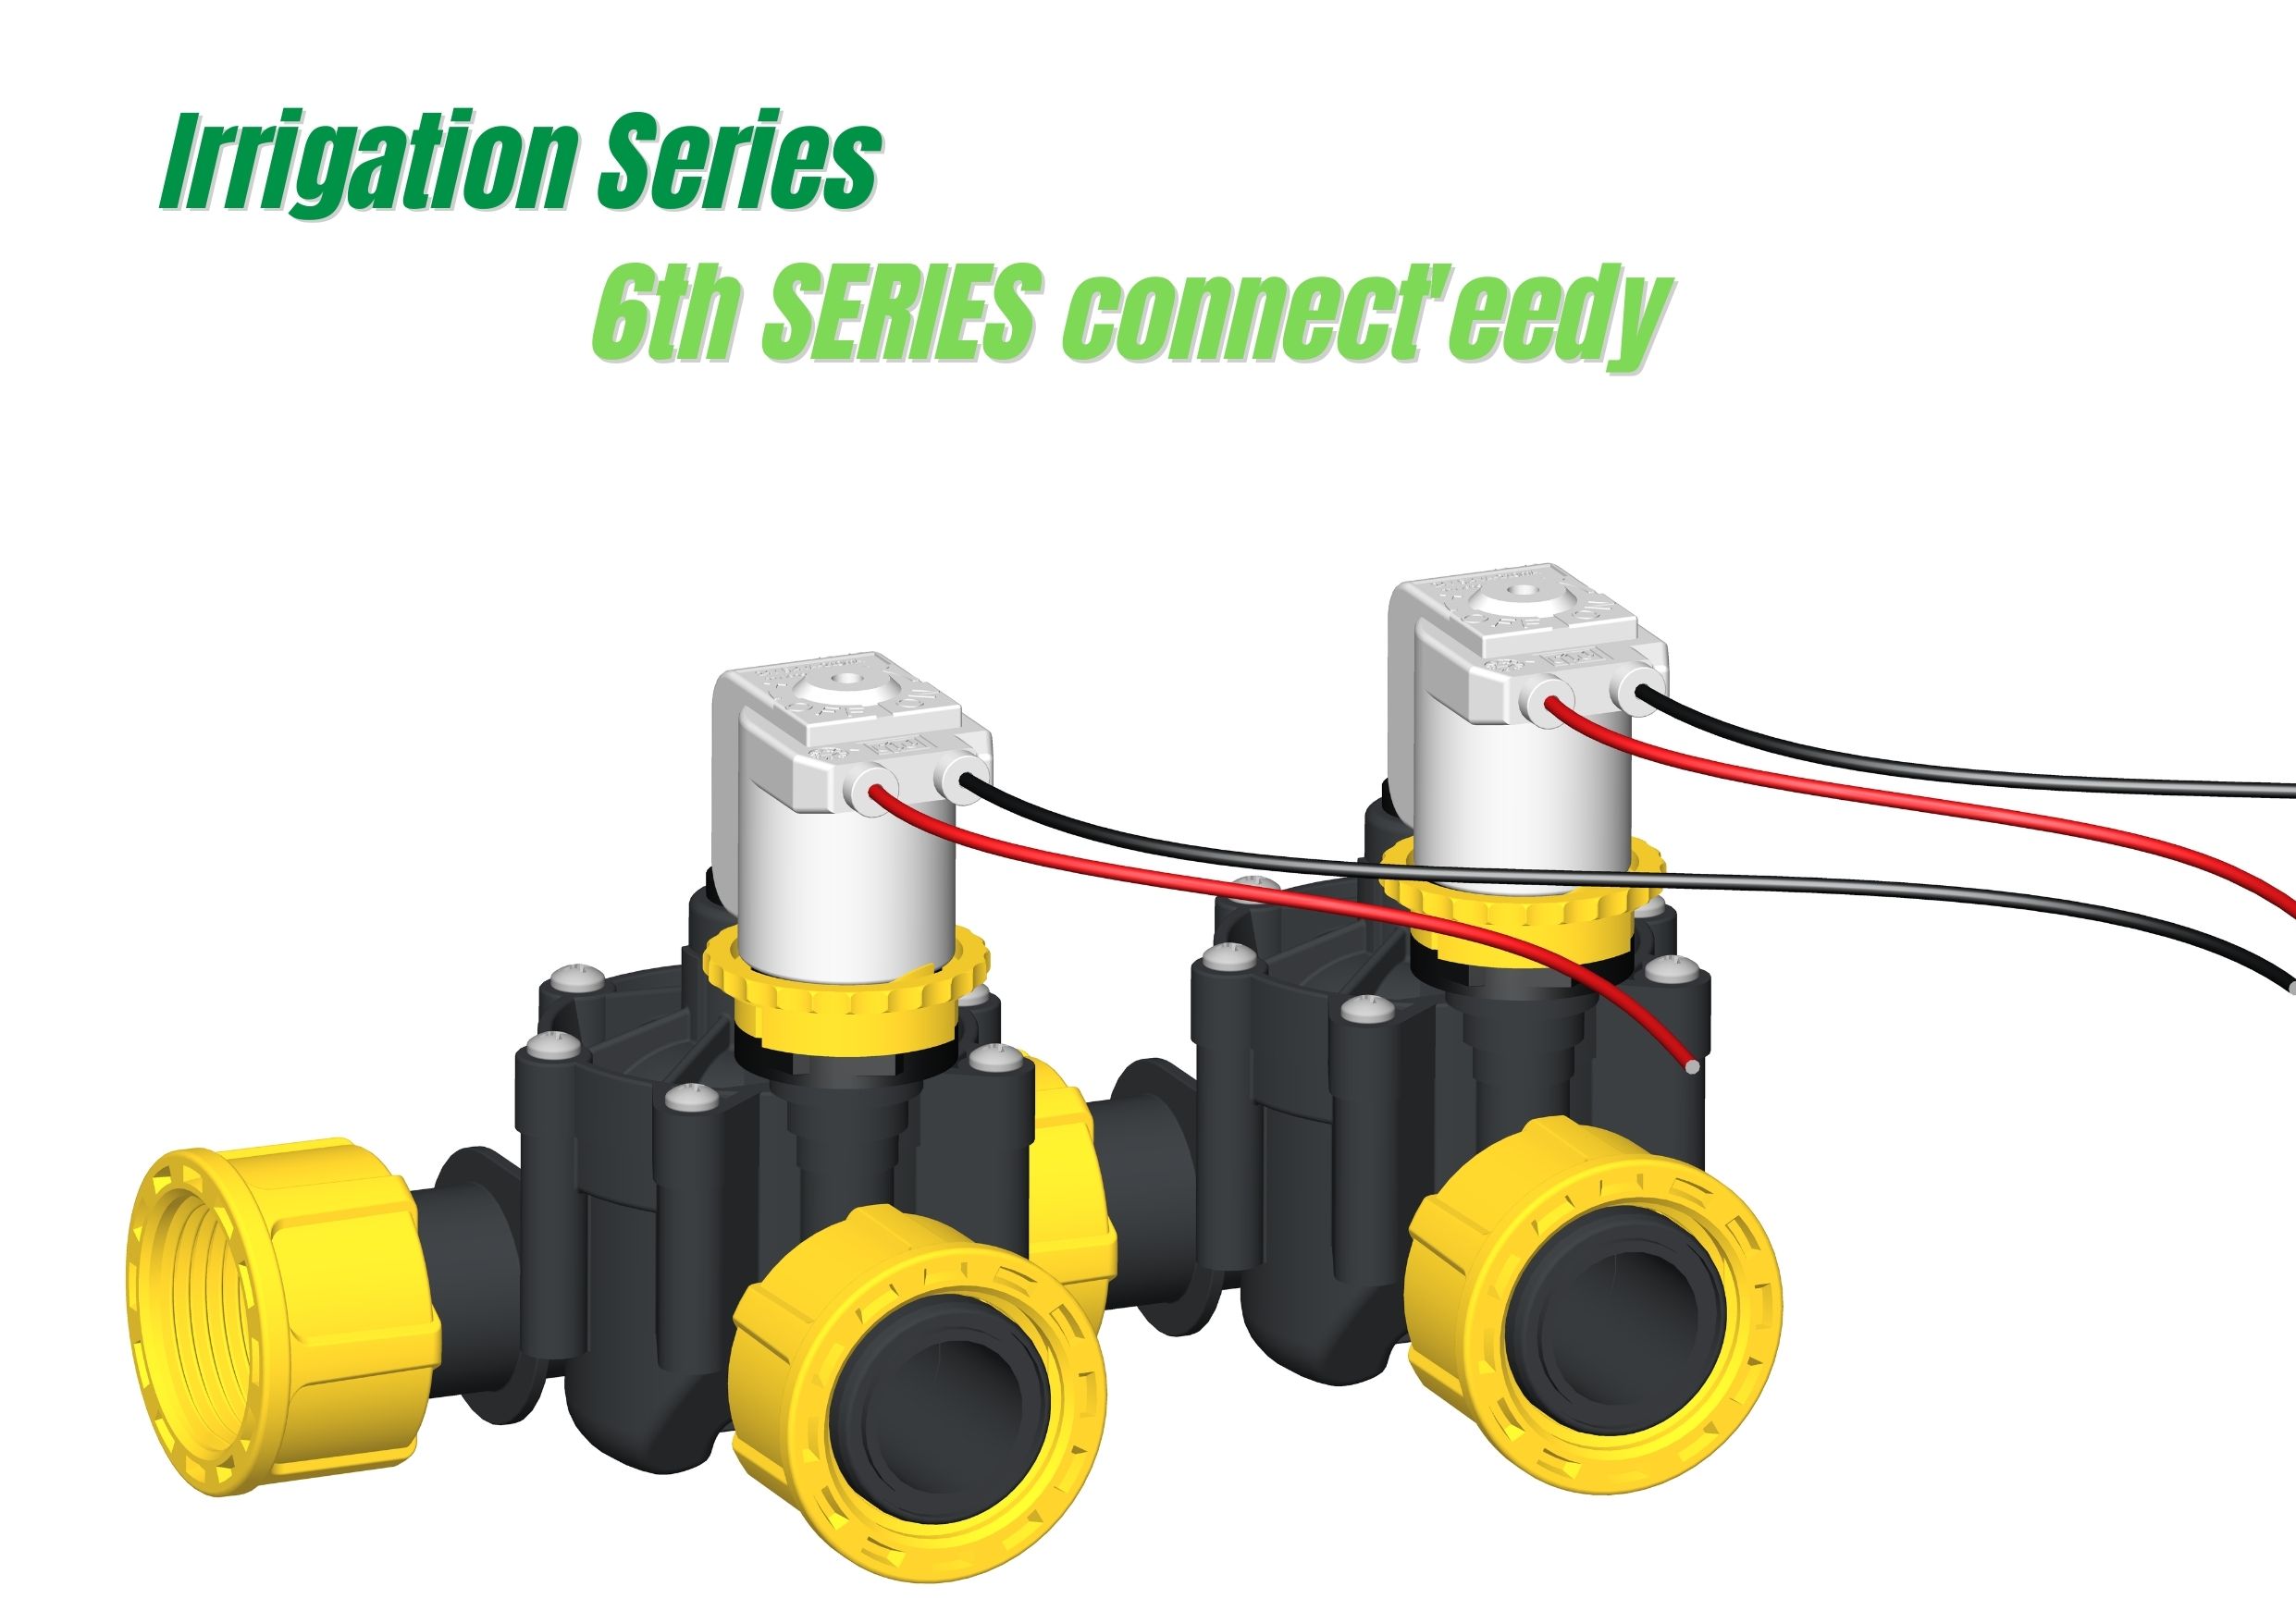 RPE presenta  "6ª Serie Connect'eedy" elettrovalvola modulare per l'irrigazione